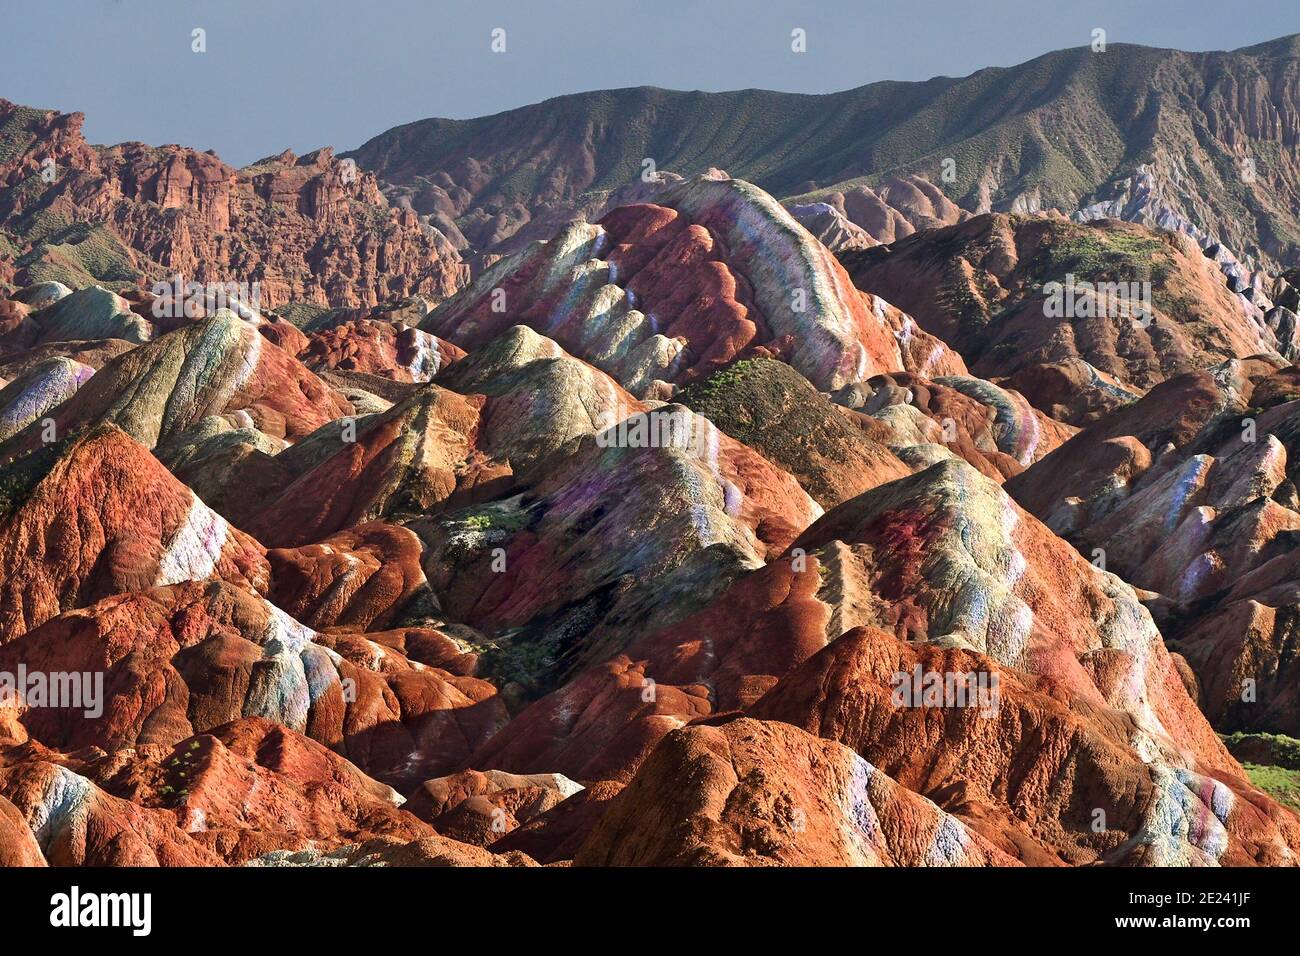 Die Regenbogenberge von China innerhalb des Zhangye Danxia landform Geological Park sind ein geologisches Wunder der Welt. Stockfoto